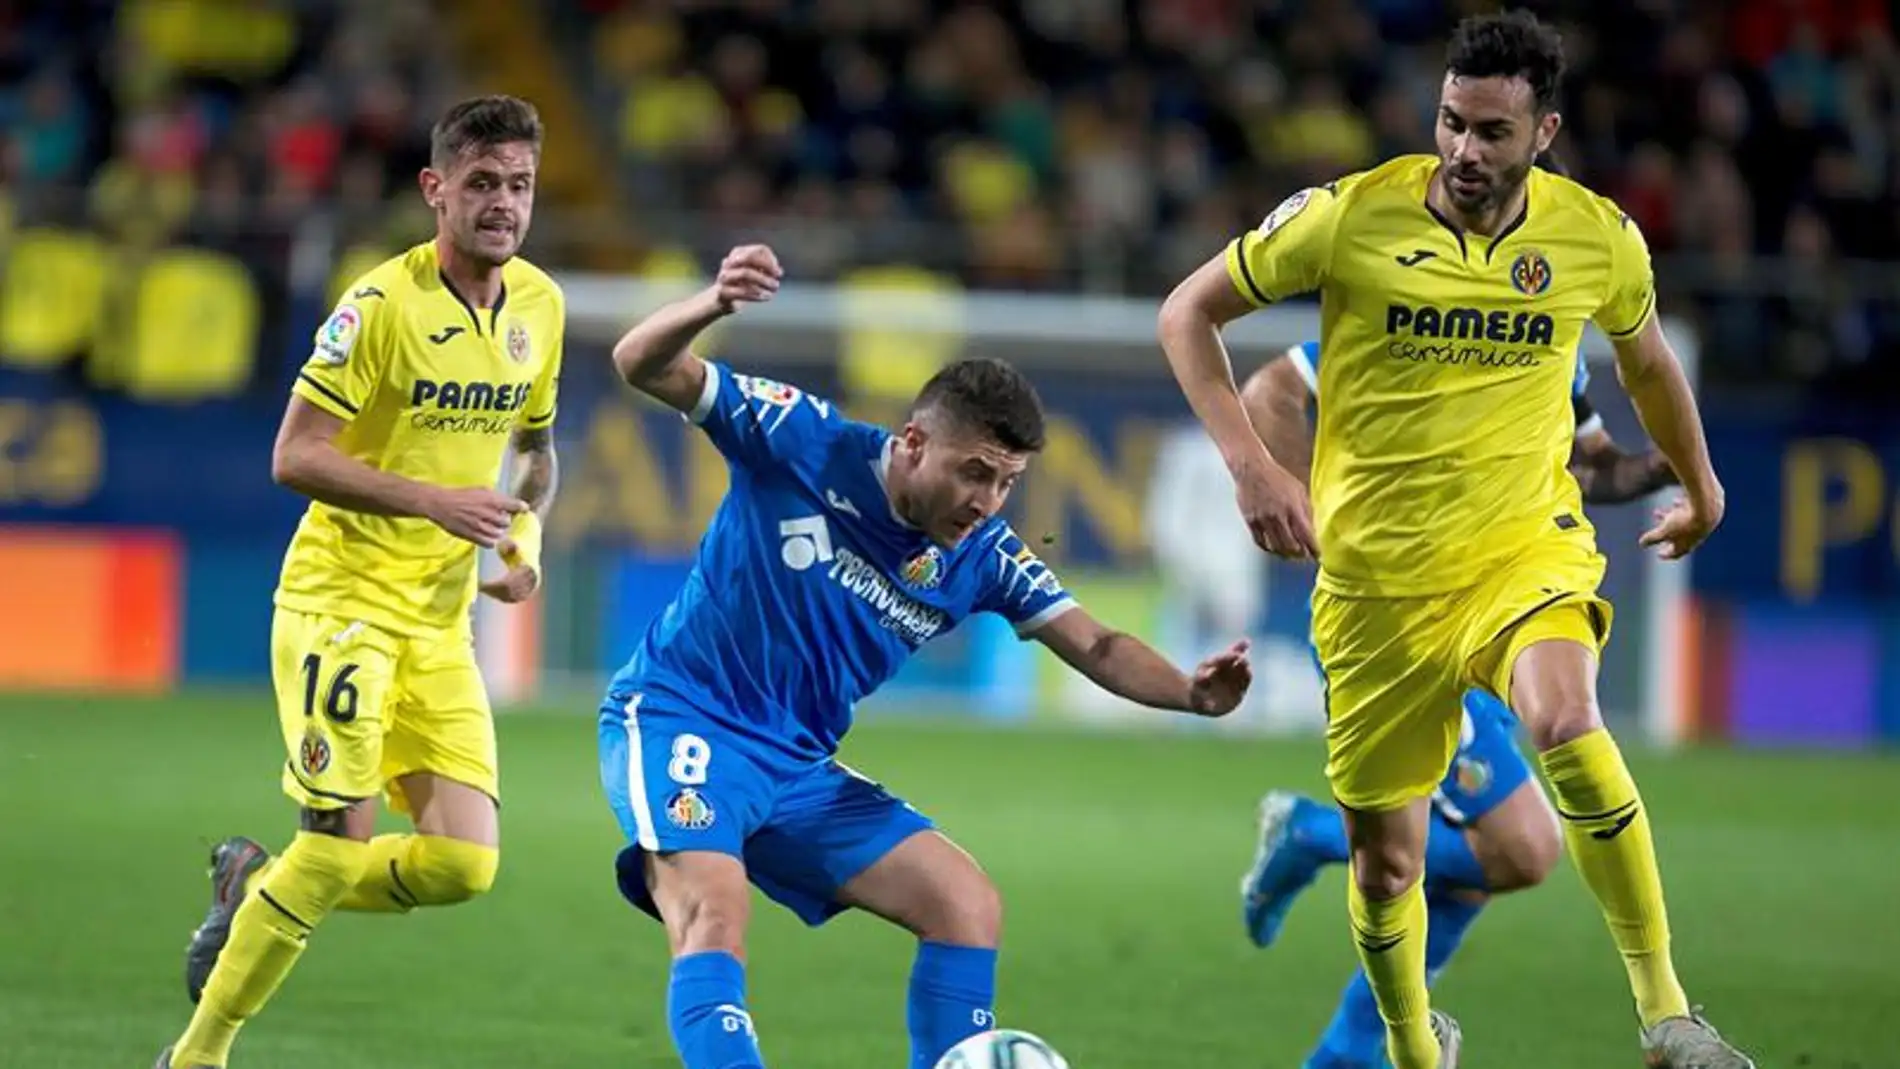 El centrocampista del Getafe Framcisco Portillo juega un balón entre dos jugadores del Villarreal